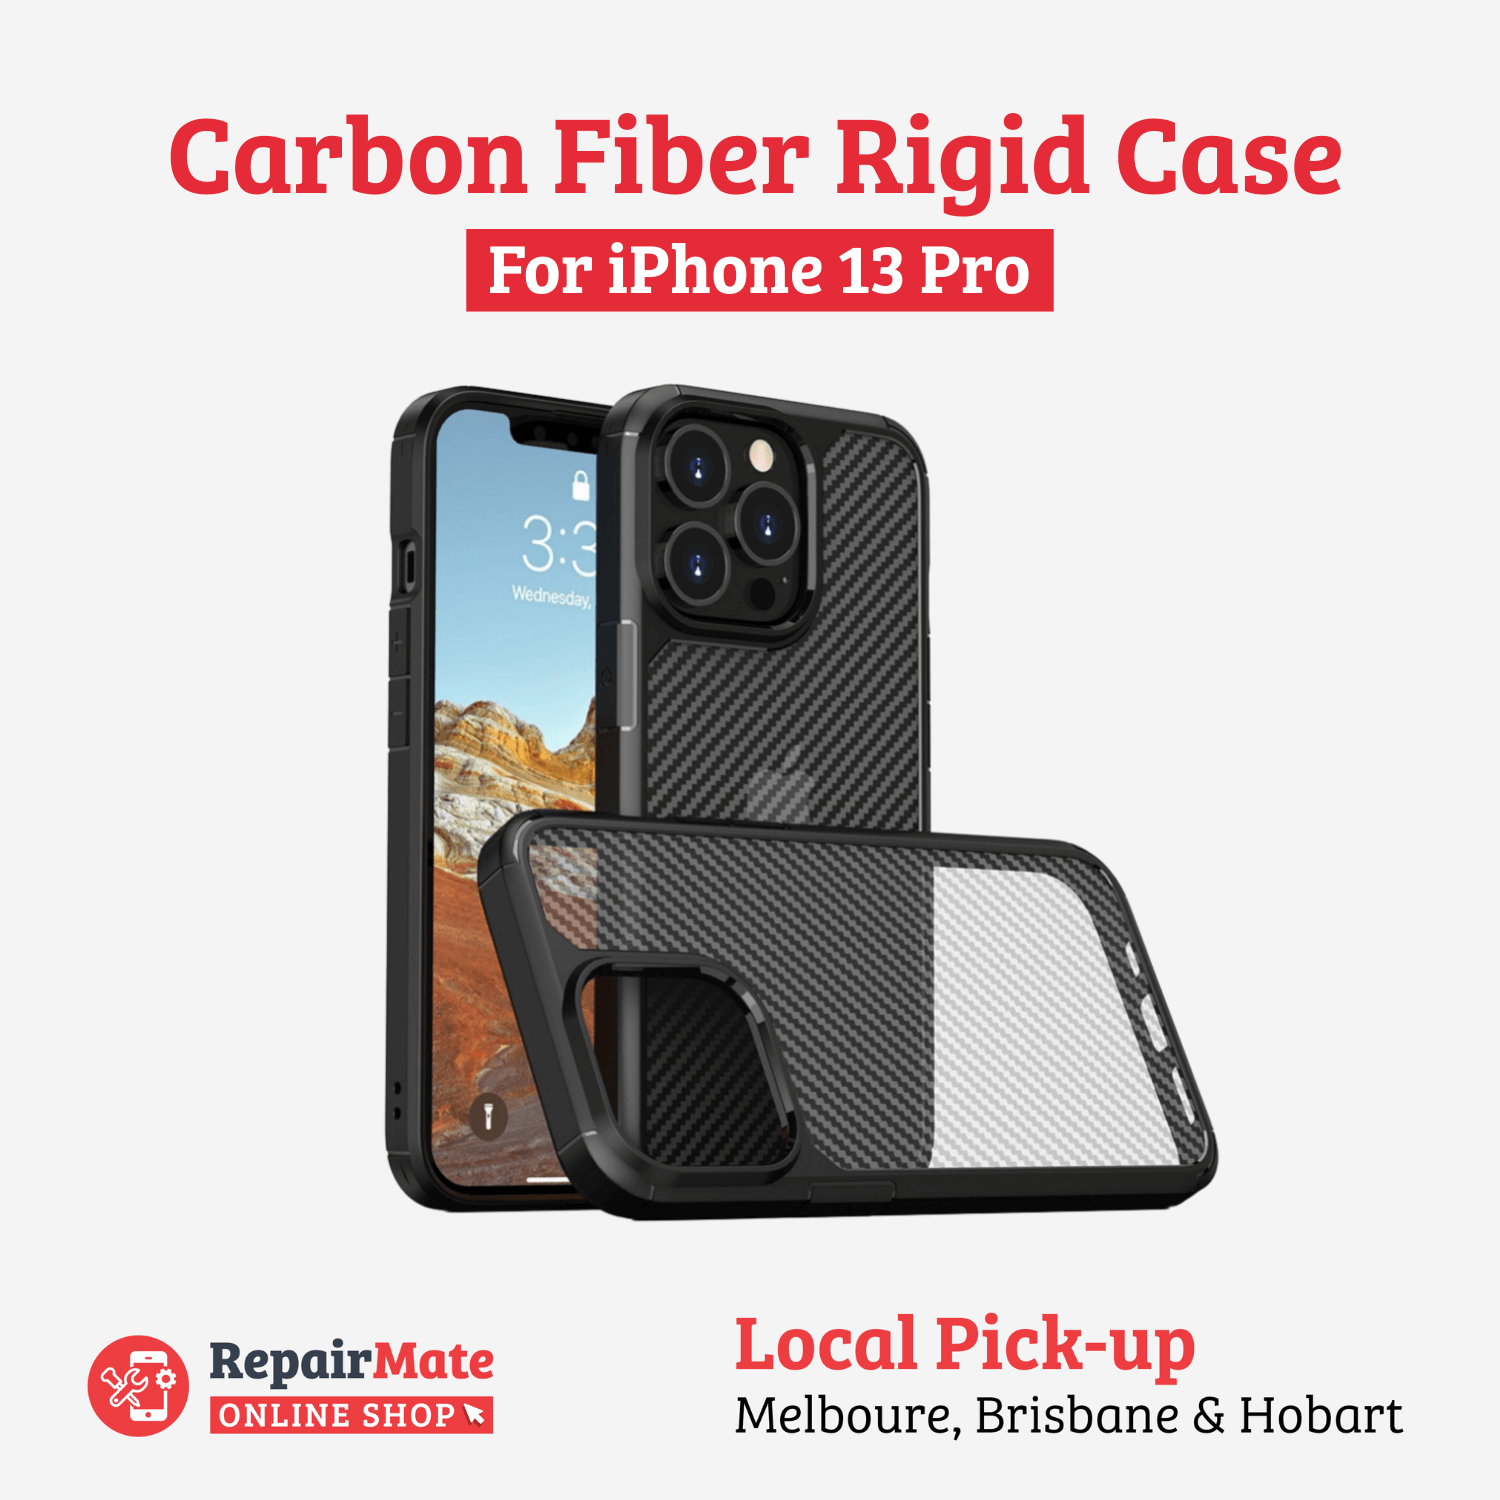 iPhone 13 Pro Carbon Fiber Rigid Case Cover